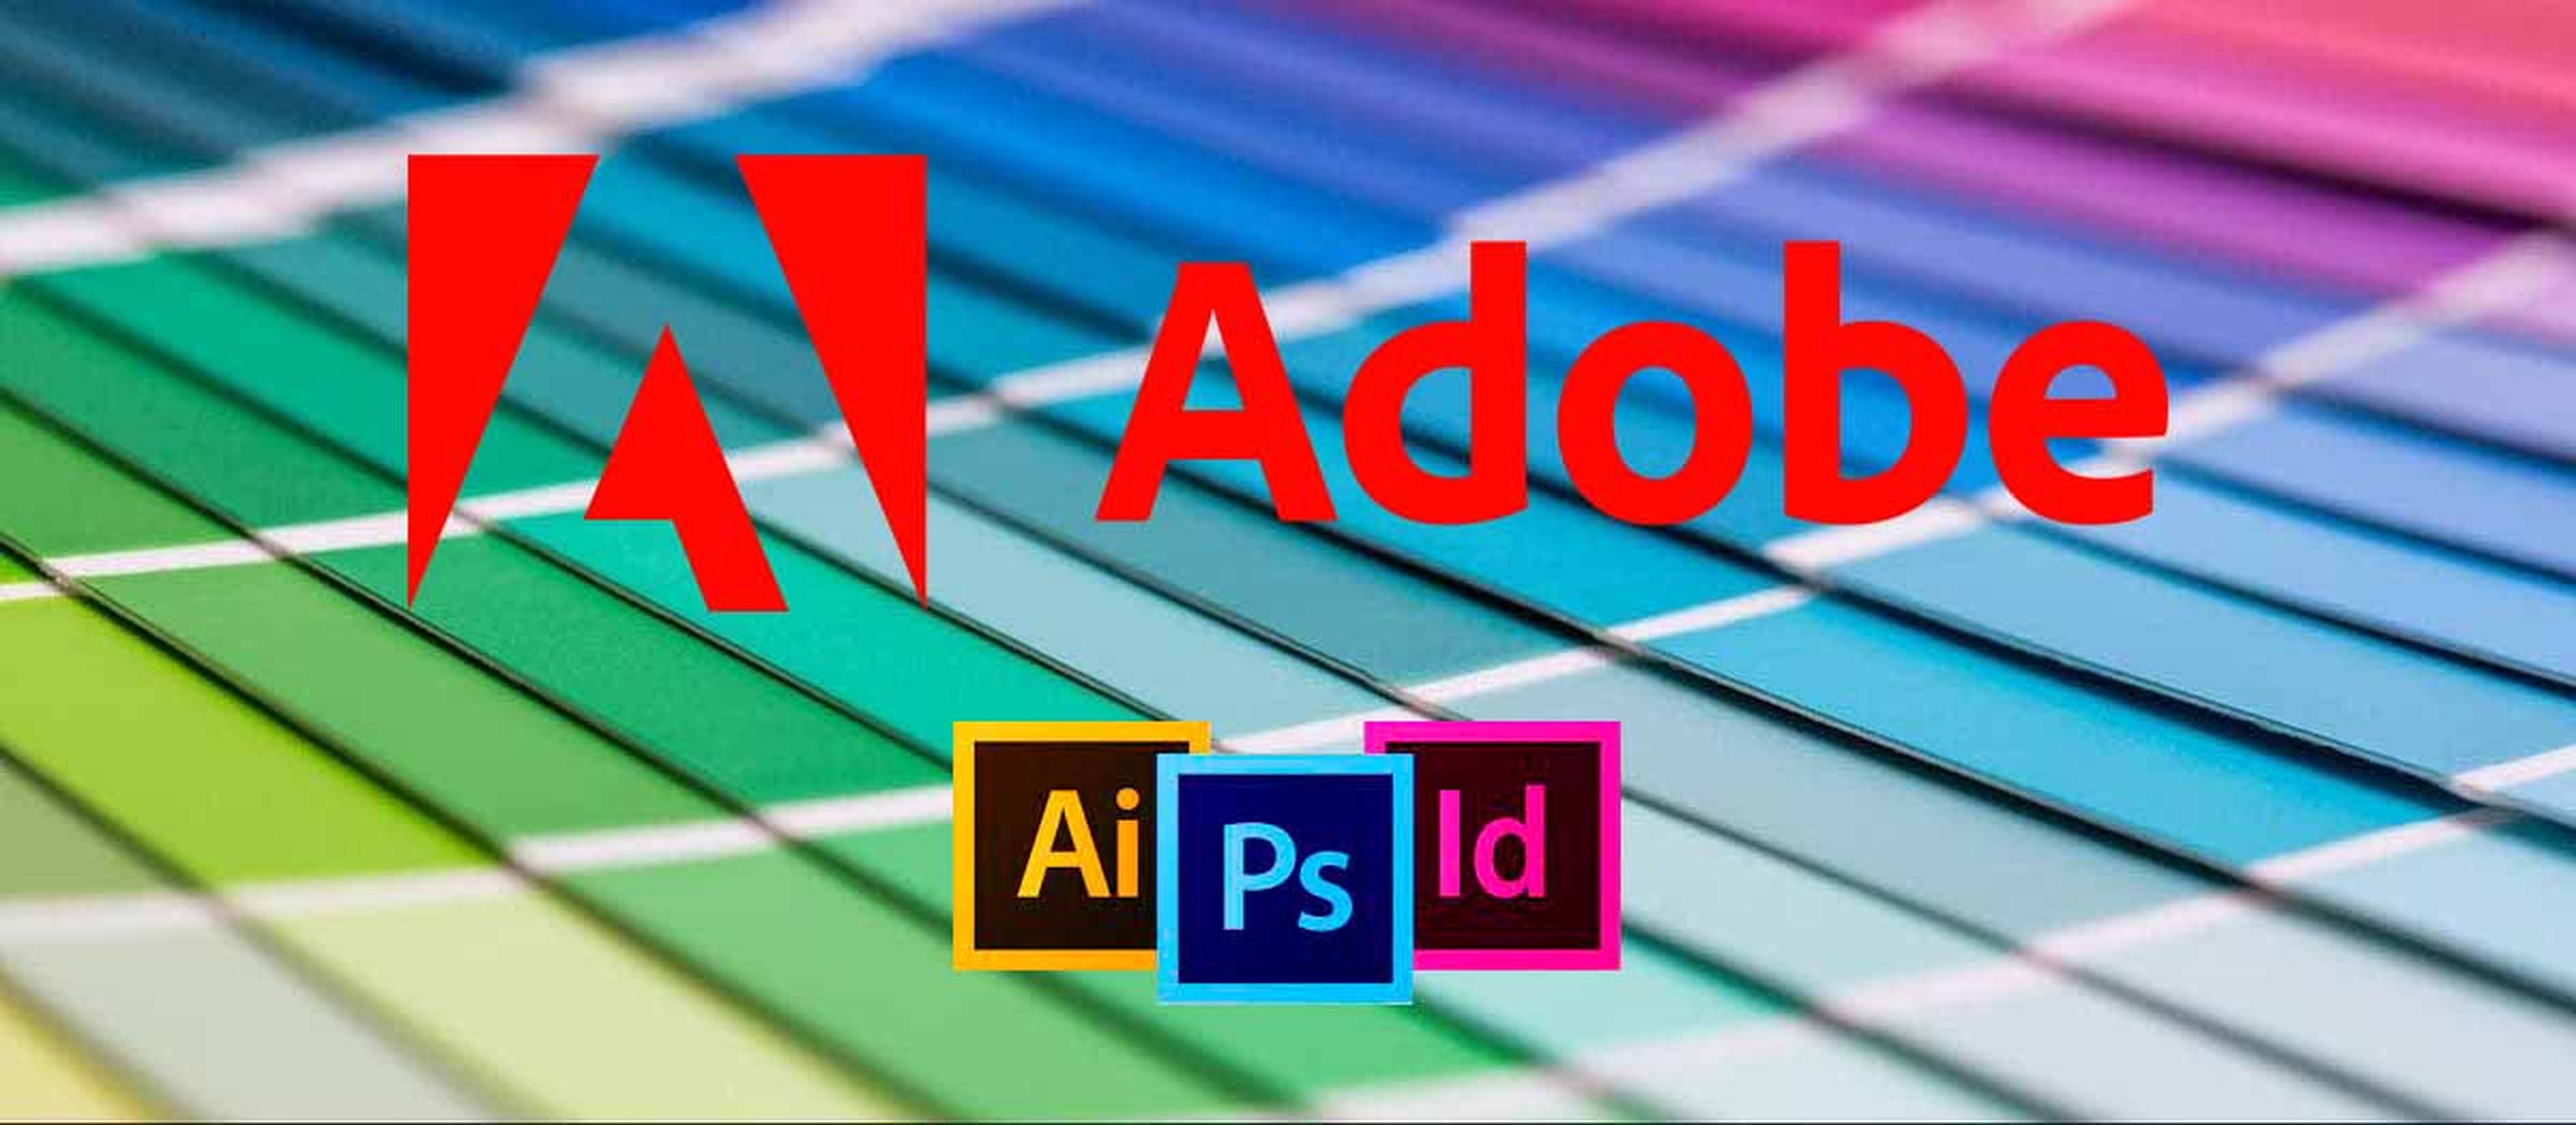 Los colores Pantone para aplicaciones de Adobe como Photoshop irán bajo suscripción